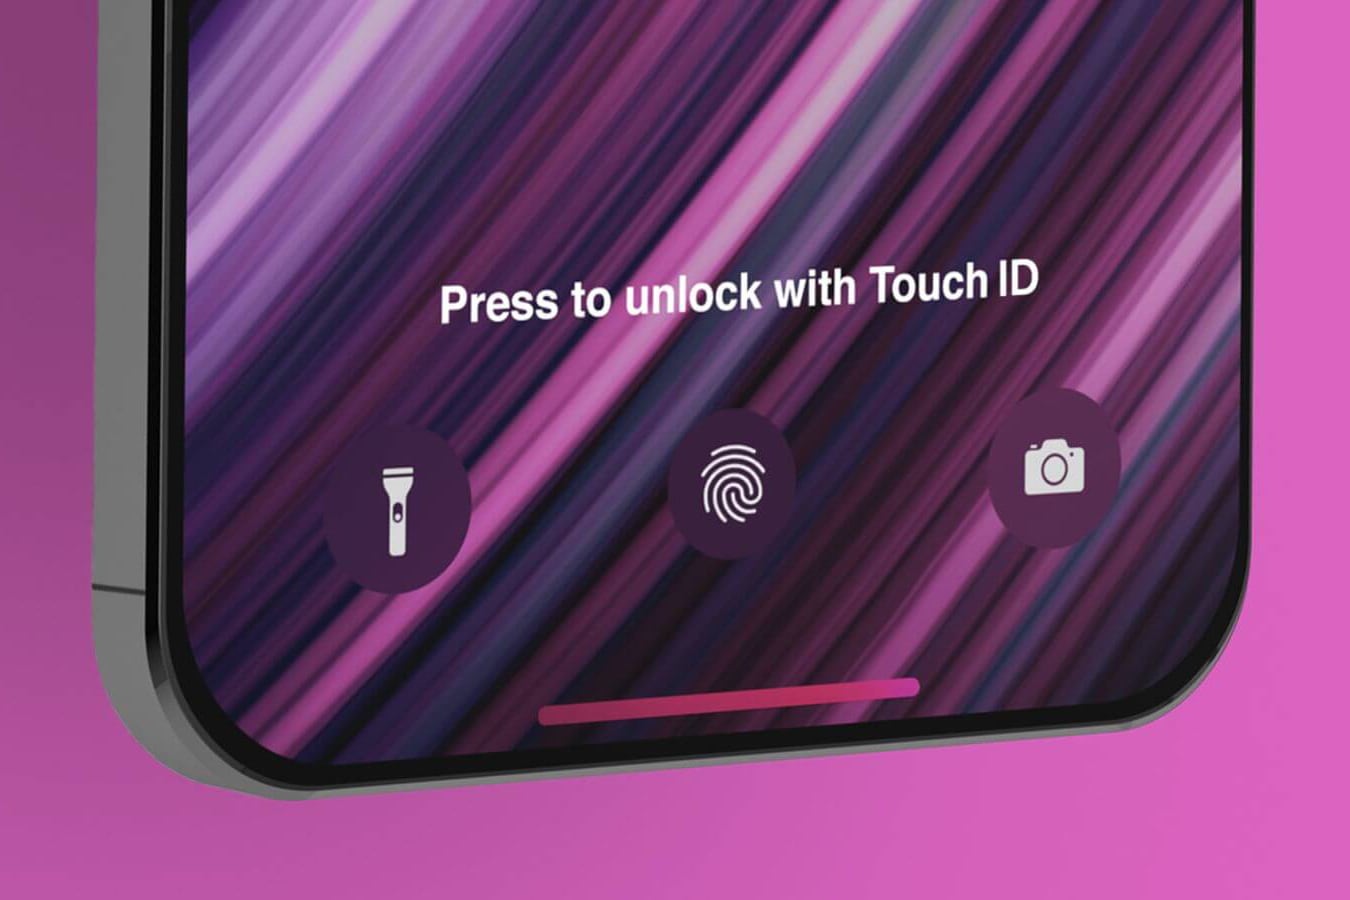 Куо: Apple представит iPhone с Touch ID под экраном в 2022 году